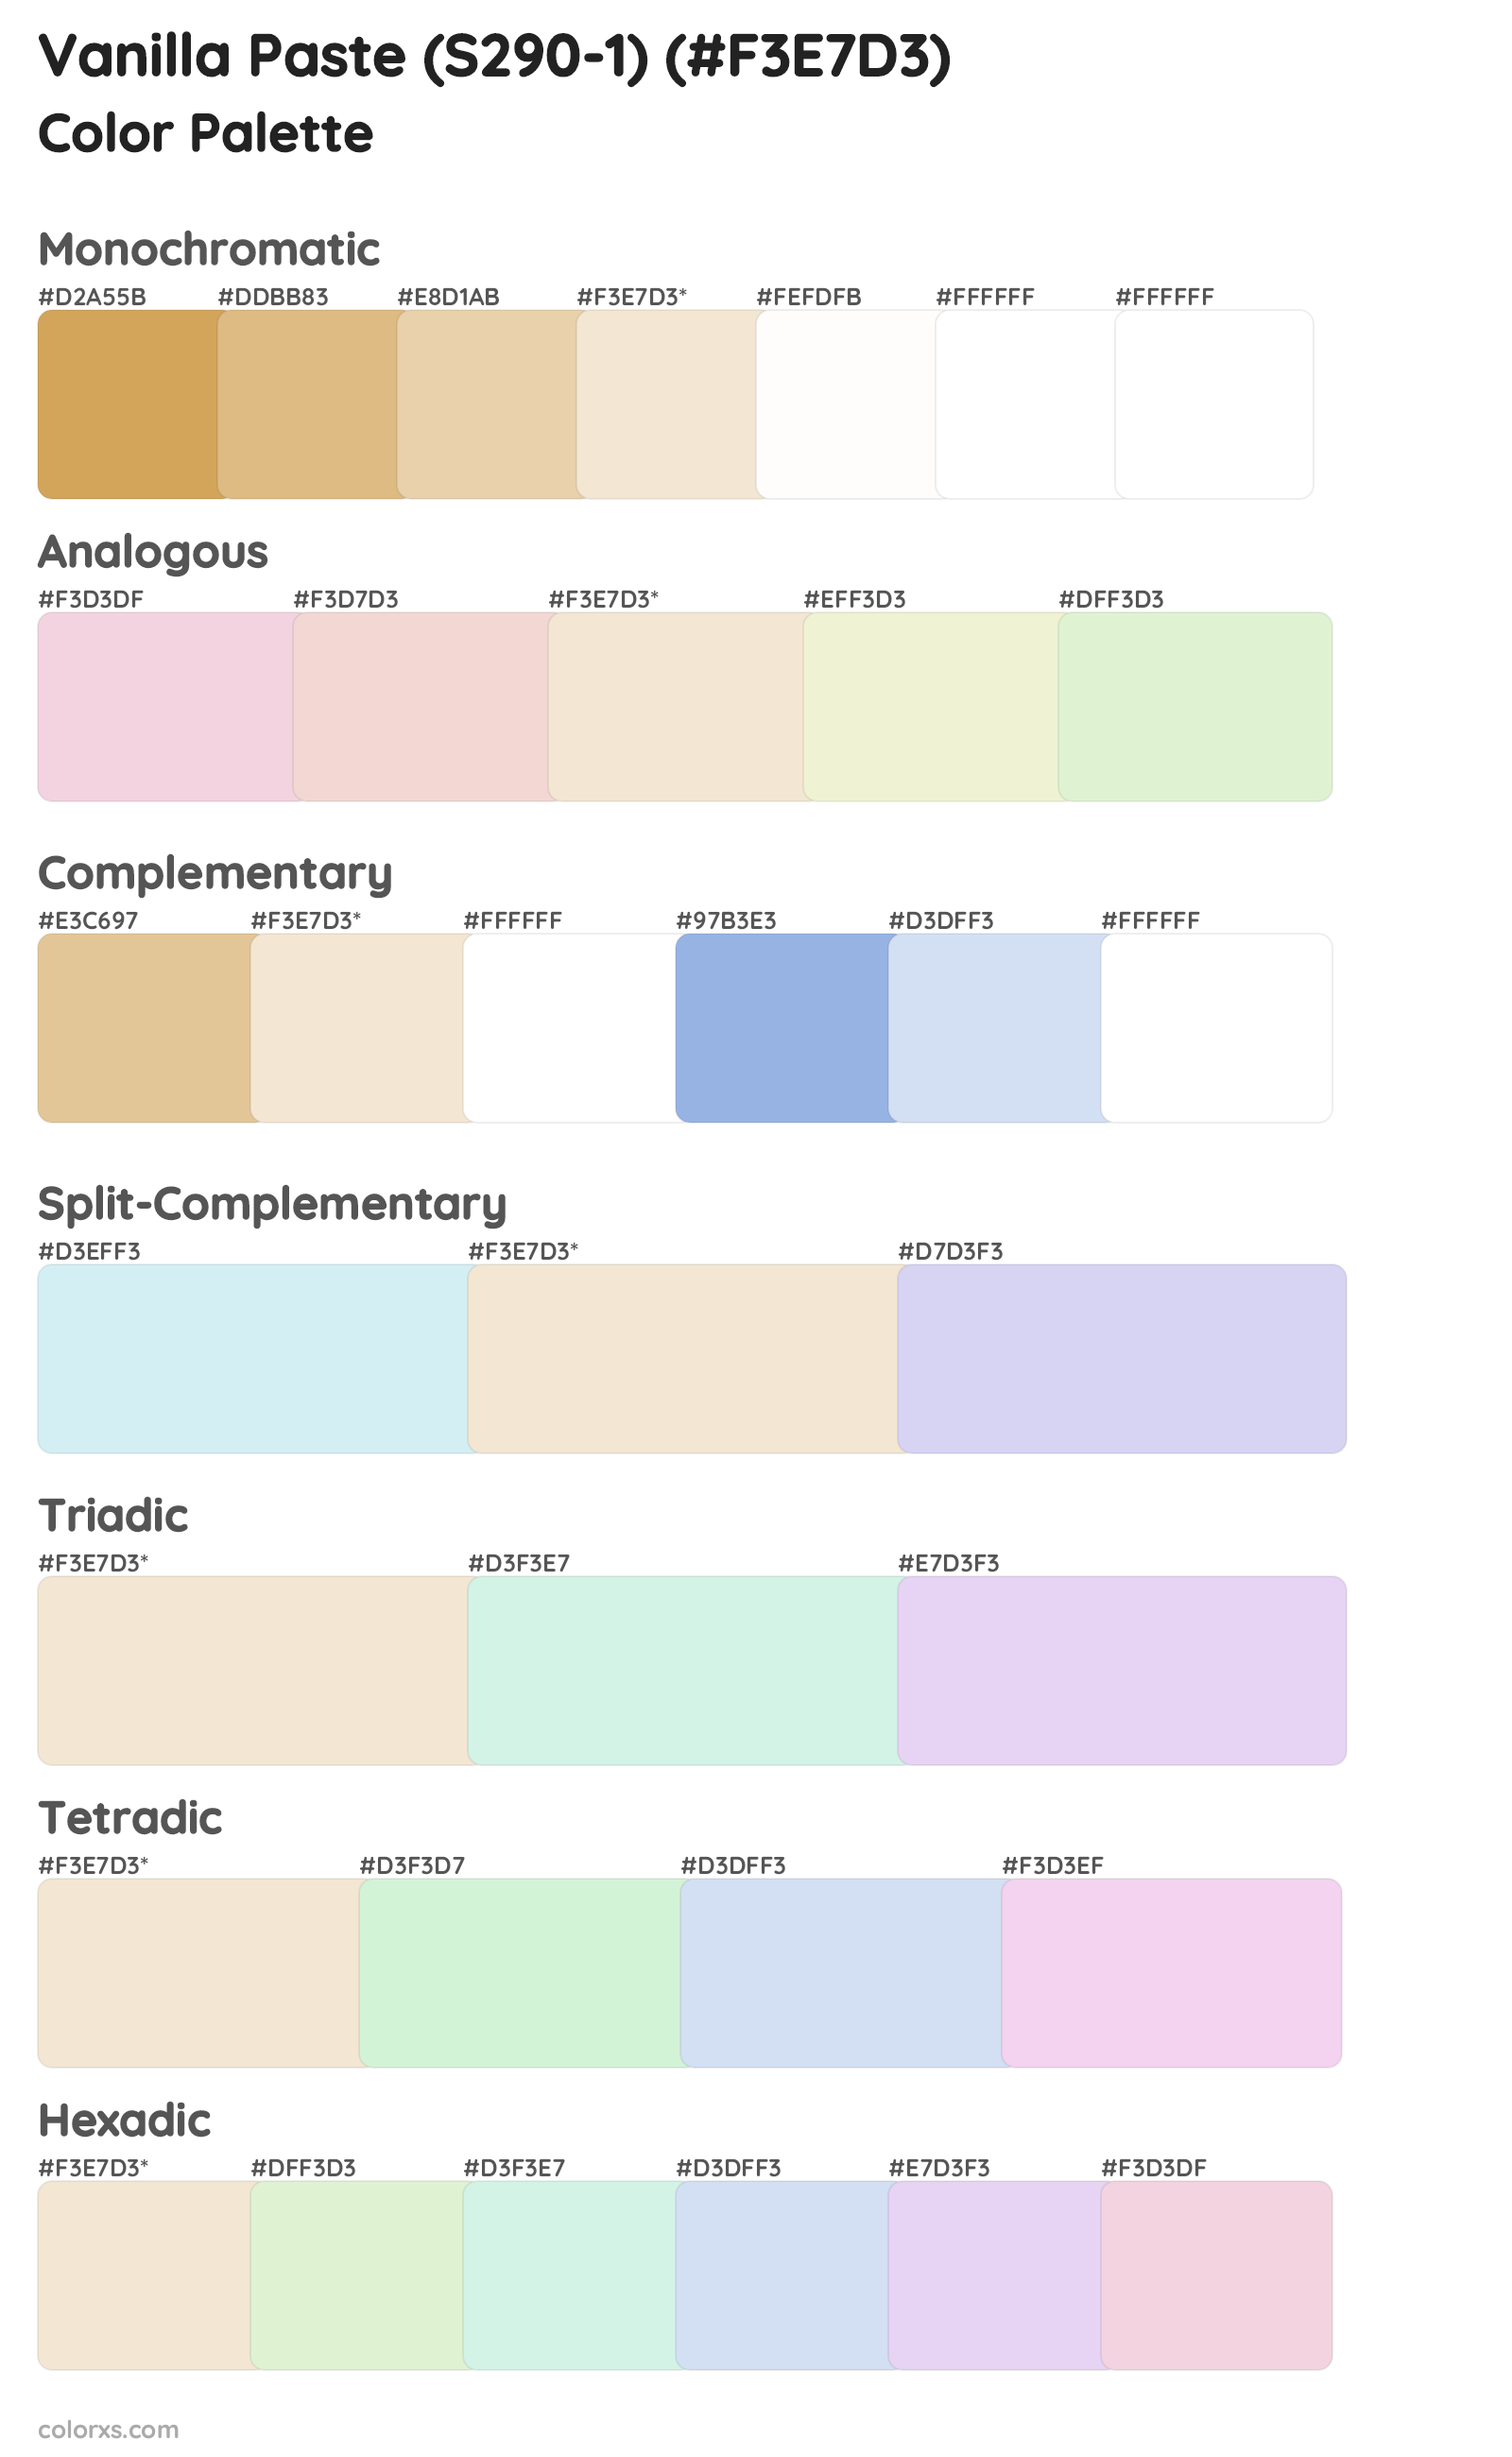 Vanilla Paste (S290-1) Color Scheme Palettes